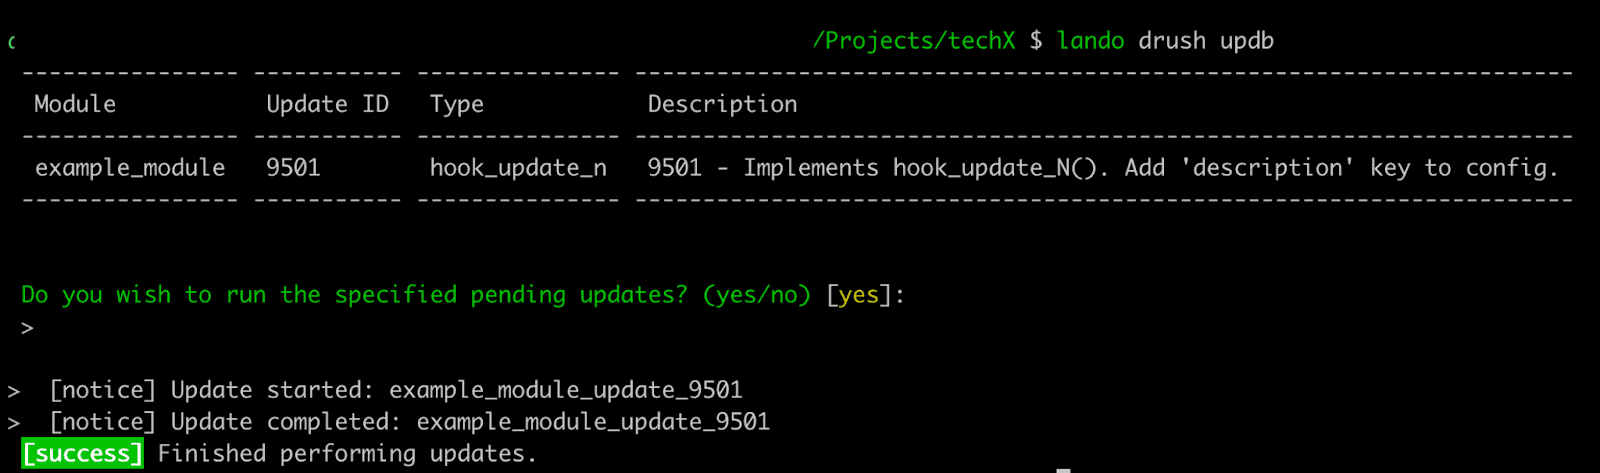 Implement hook update